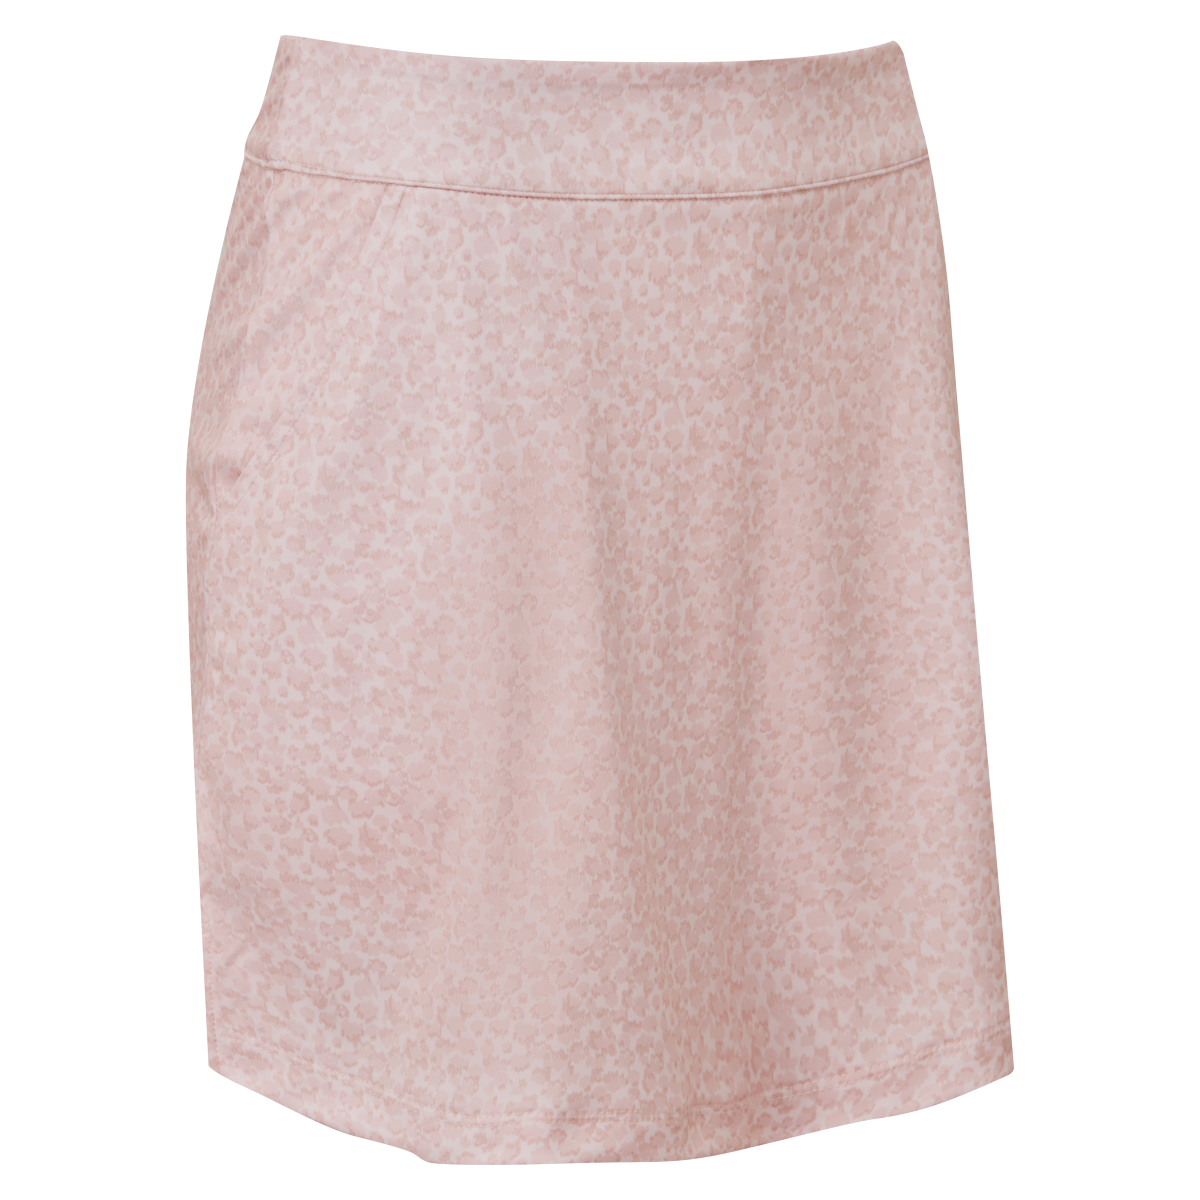 Levně FootJoy Interlock Print dámská golfová sukně, světle růžová